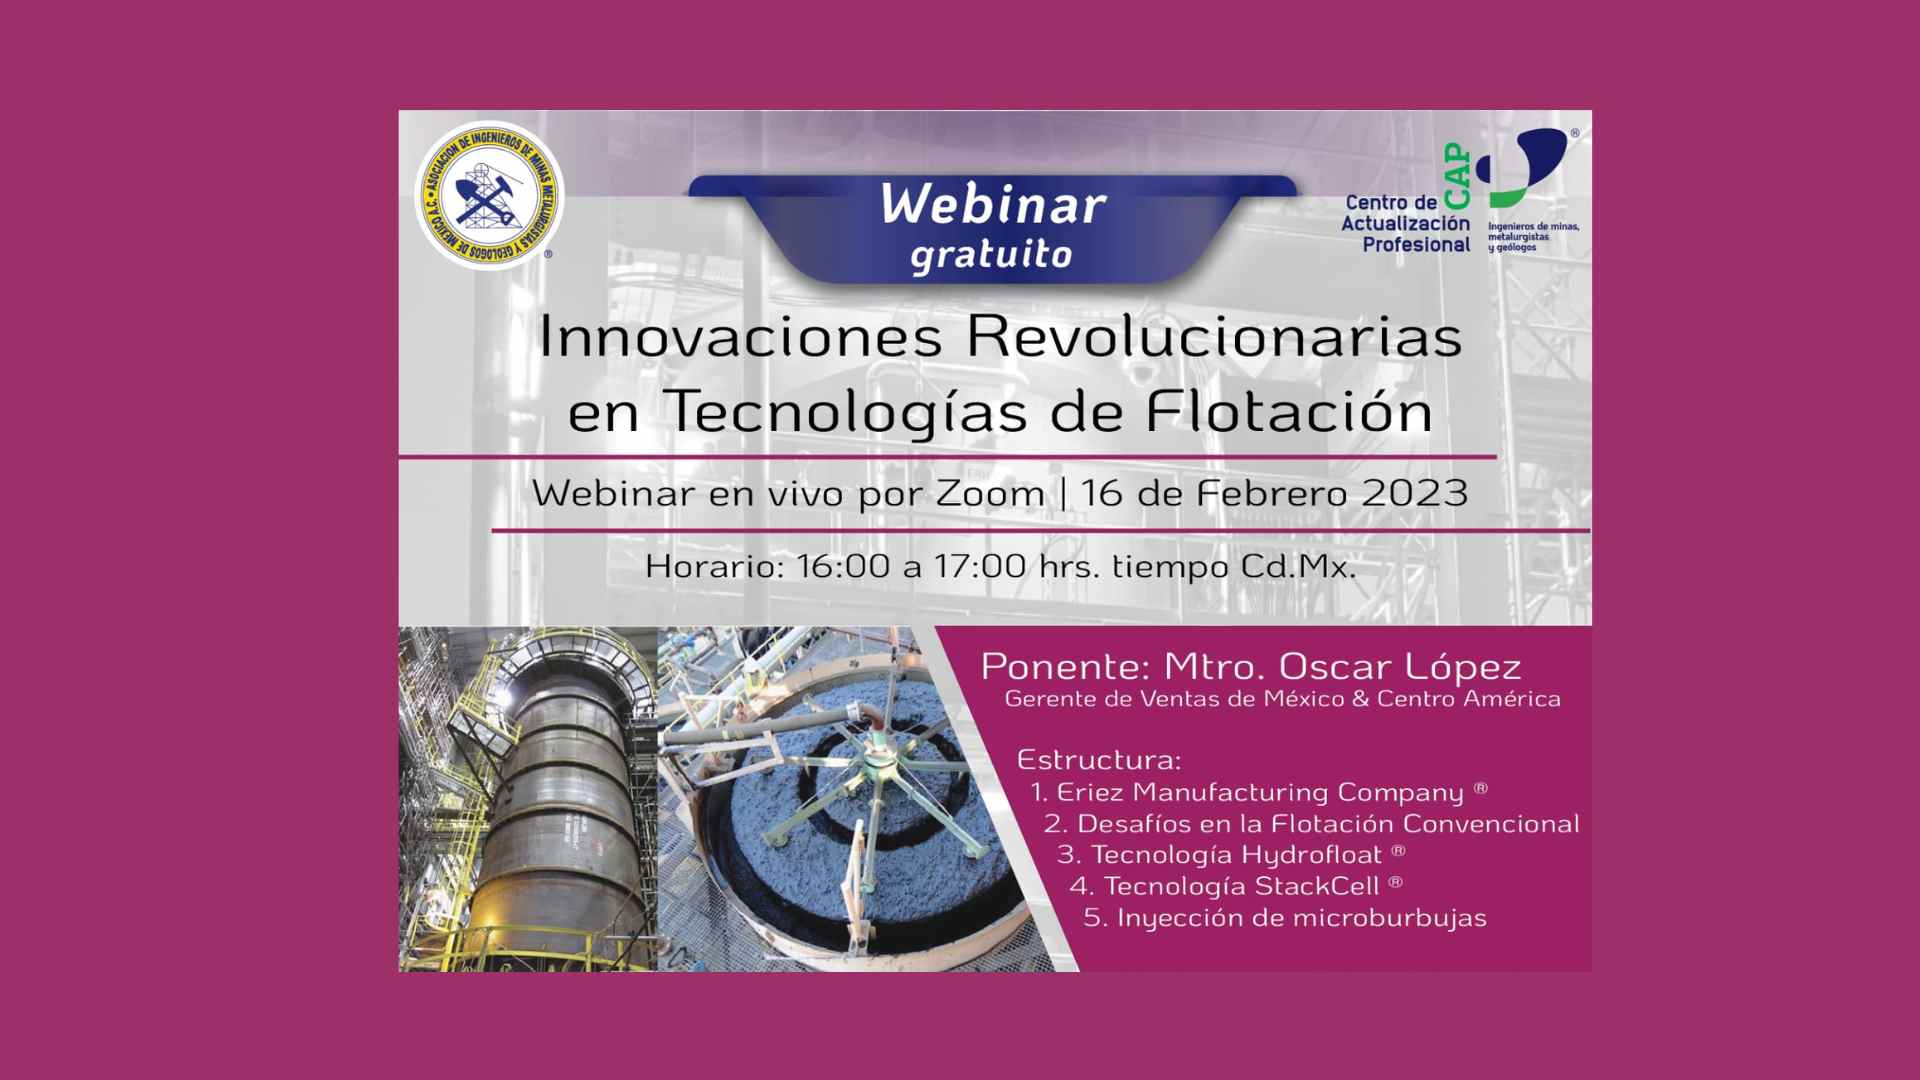 Video: Webinar "Innovaciones Revolucionarias en Tecnologías de Flotación" Eriez